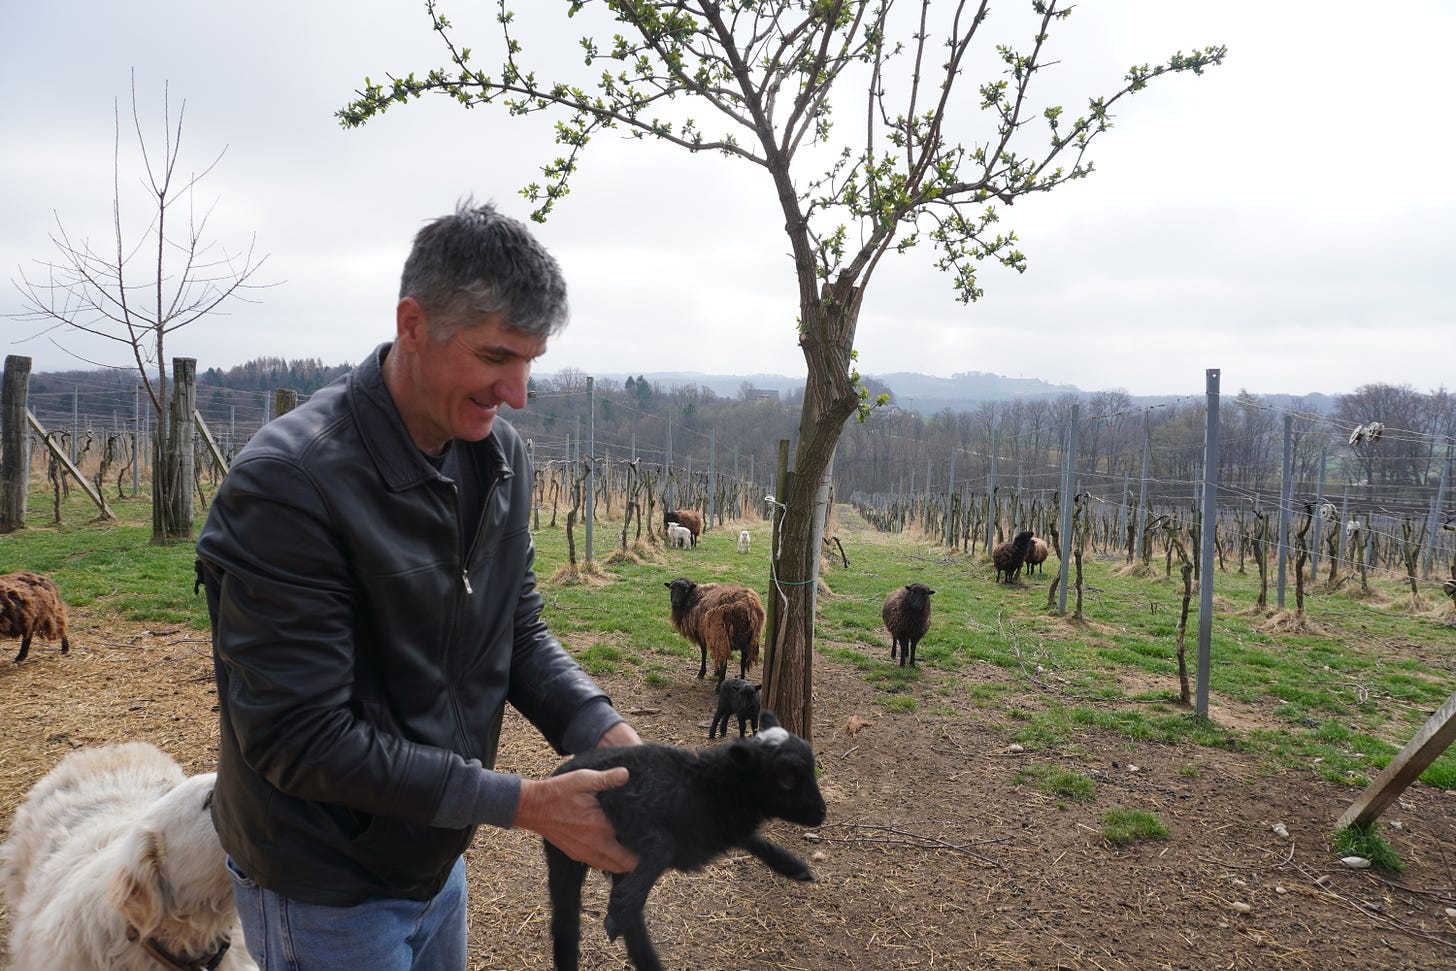 Rado Šuman with sheep in his vineyards, Štajerska, 2020